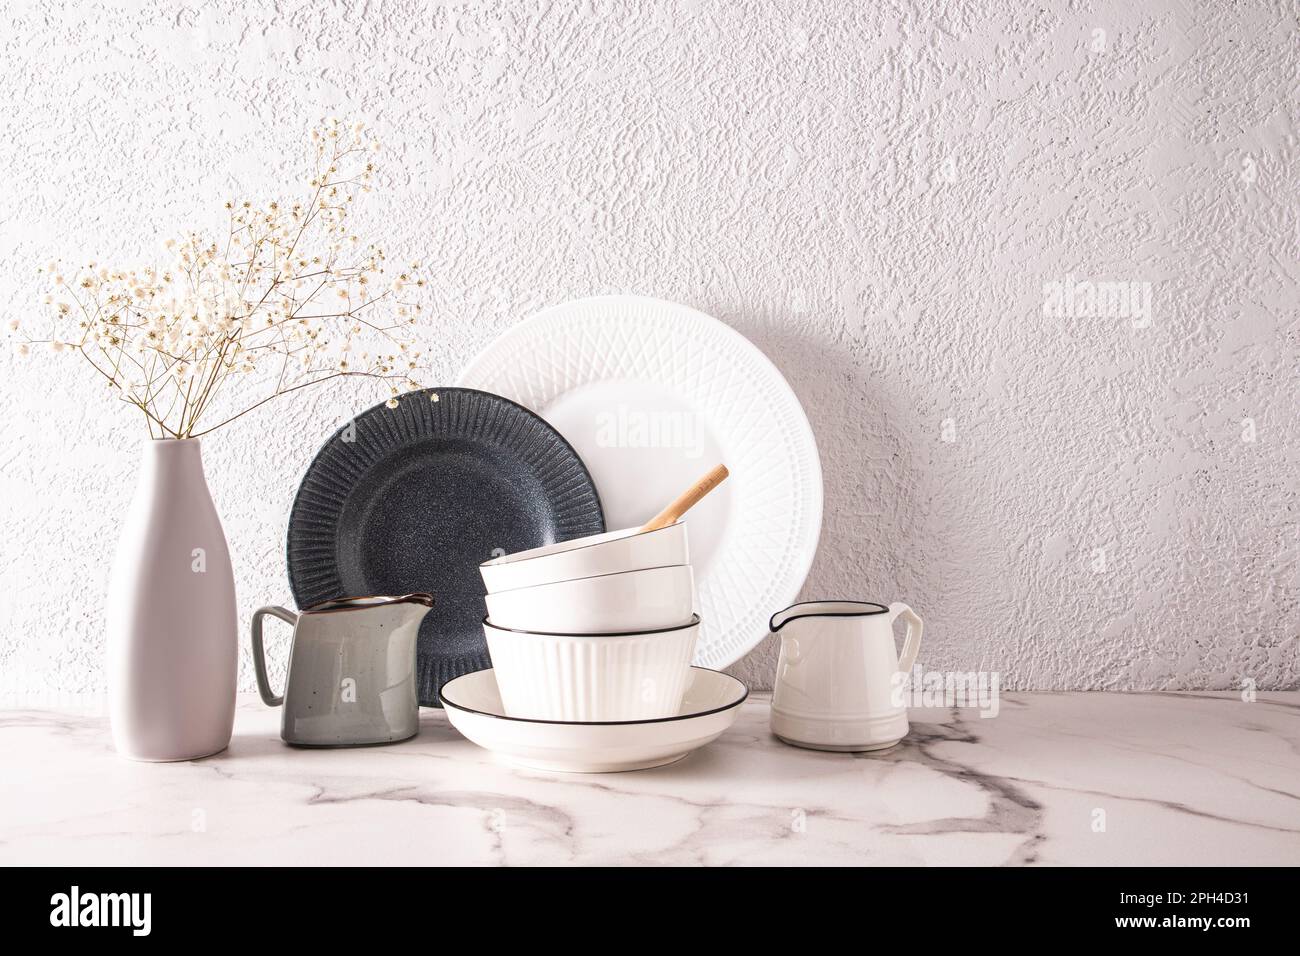 Wunderschöner weißer, stilvoller Hintergrundteil der Küchenarbeitsfläche mit Keramikschüsseln, Tellern und einer Blumenvase. Ein Kopierbereich Stockfoto